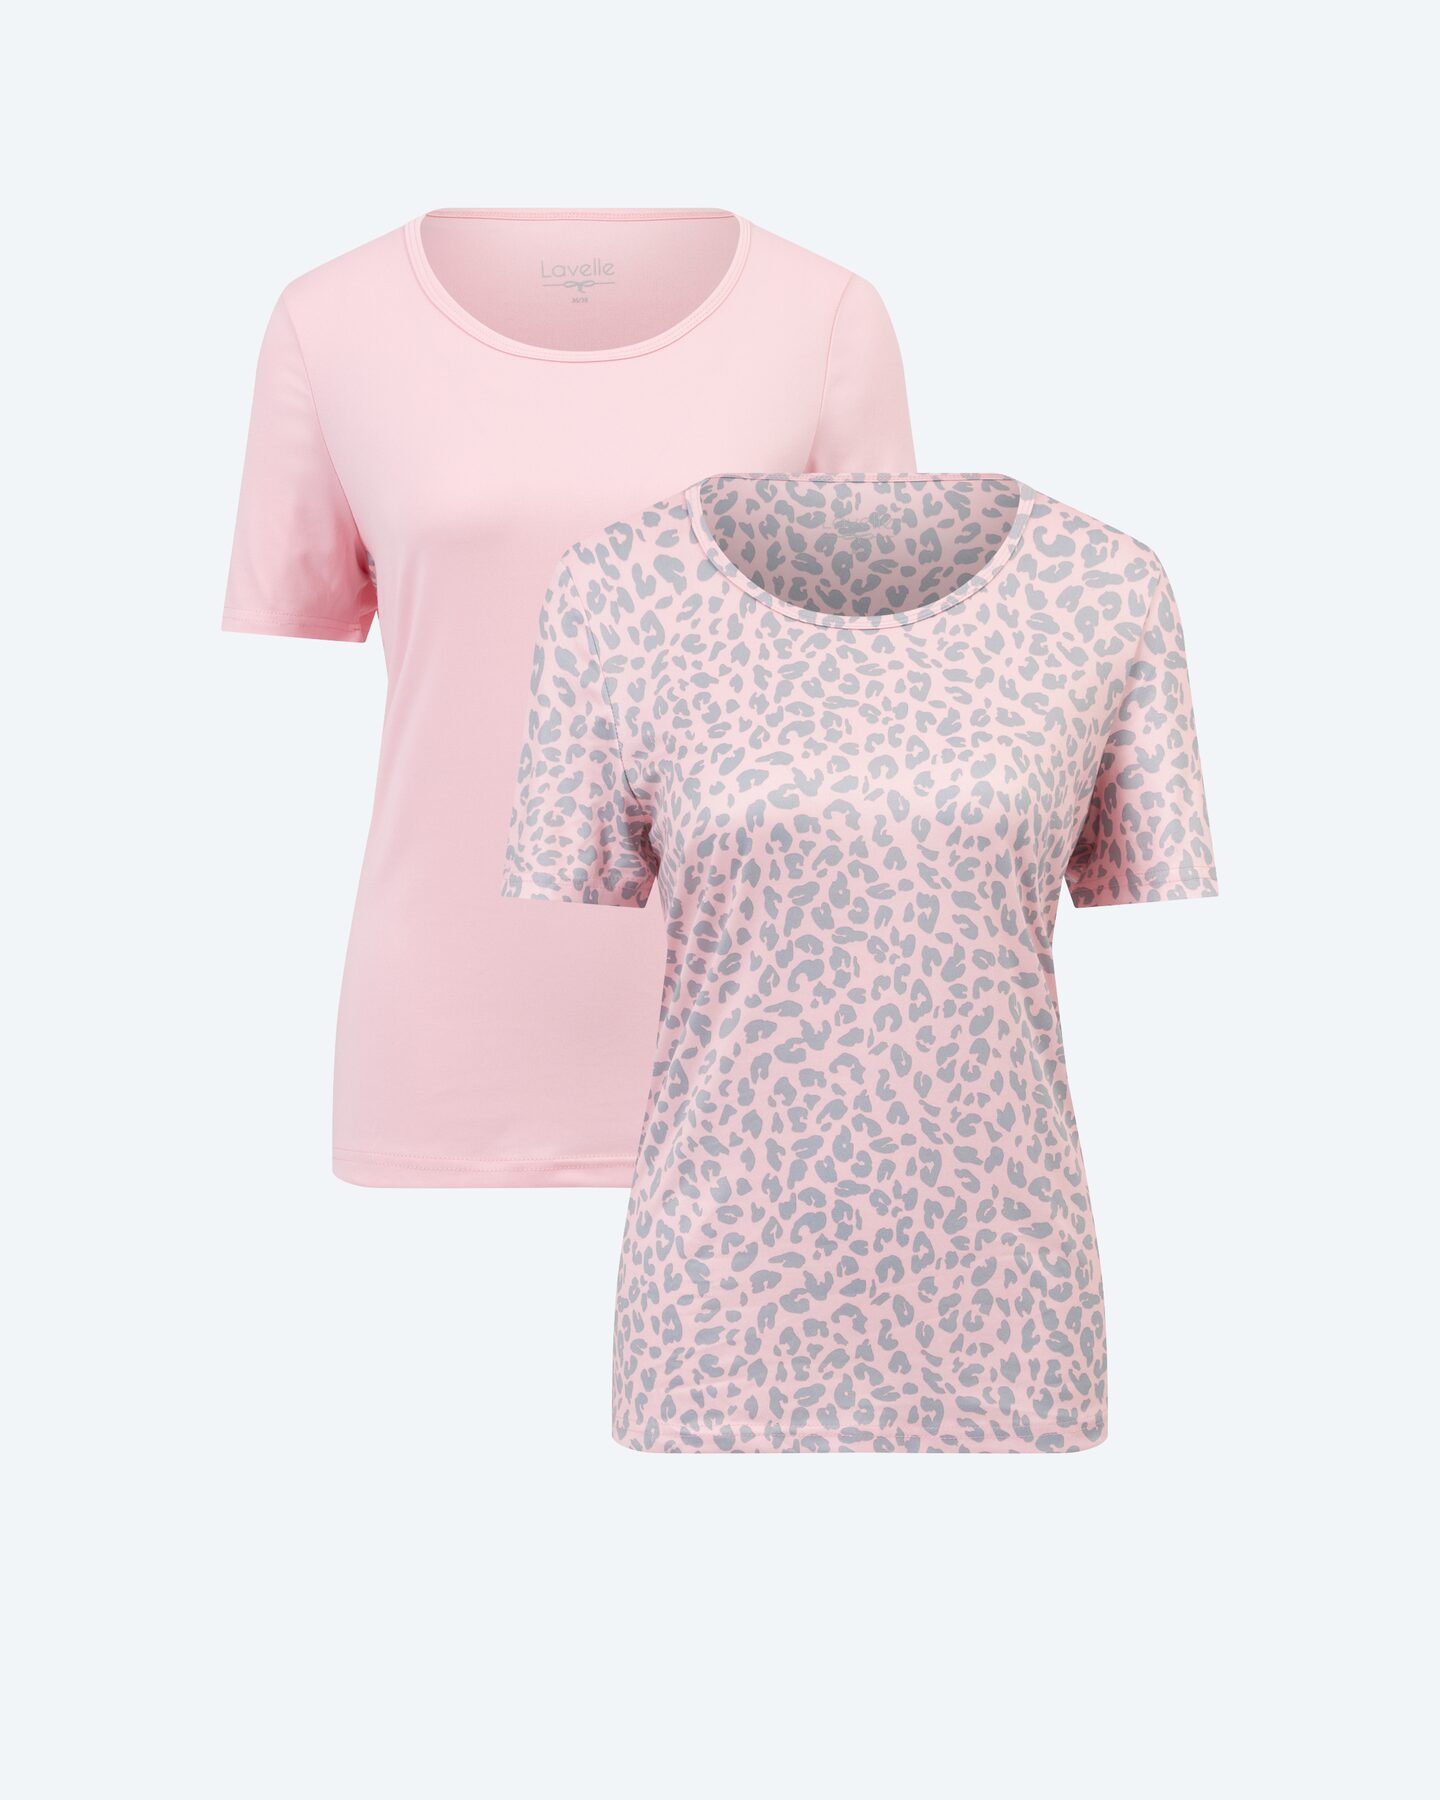 Produktabbildung für Shirt "Leopard" DP